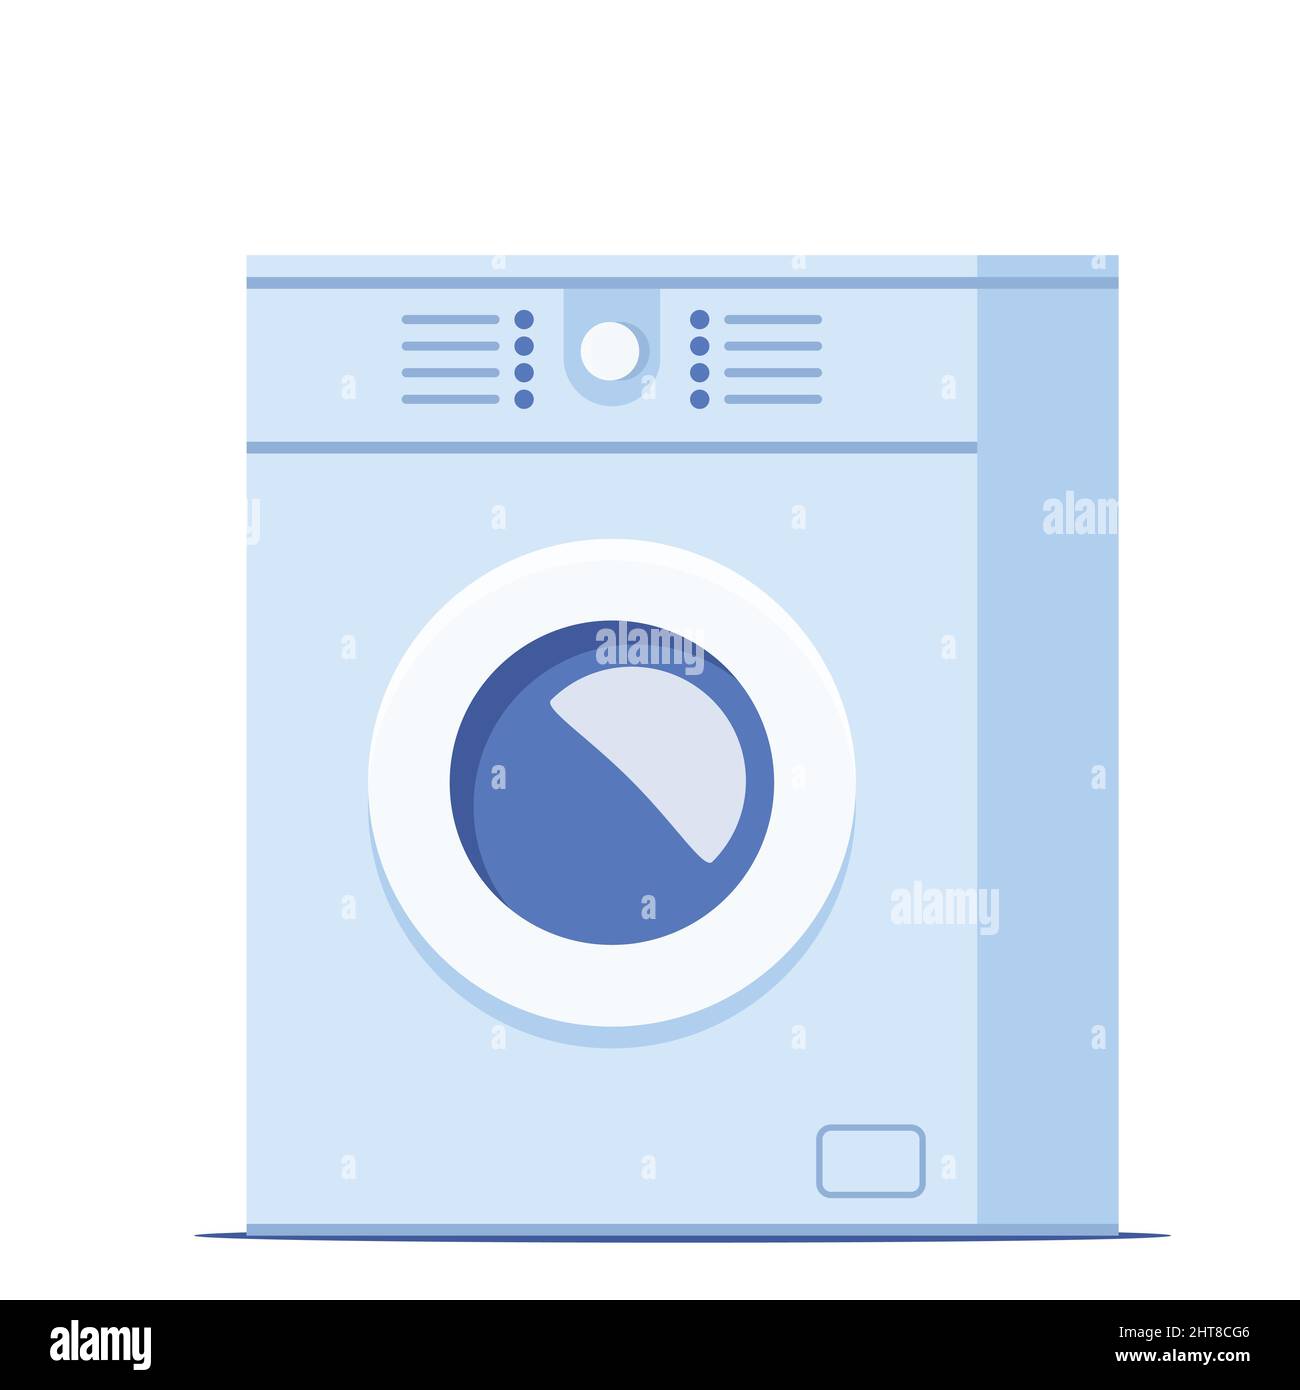 lavadora de carga frontal blanca realista sobre un fondo azul 7740305  Vector en Vecteezy